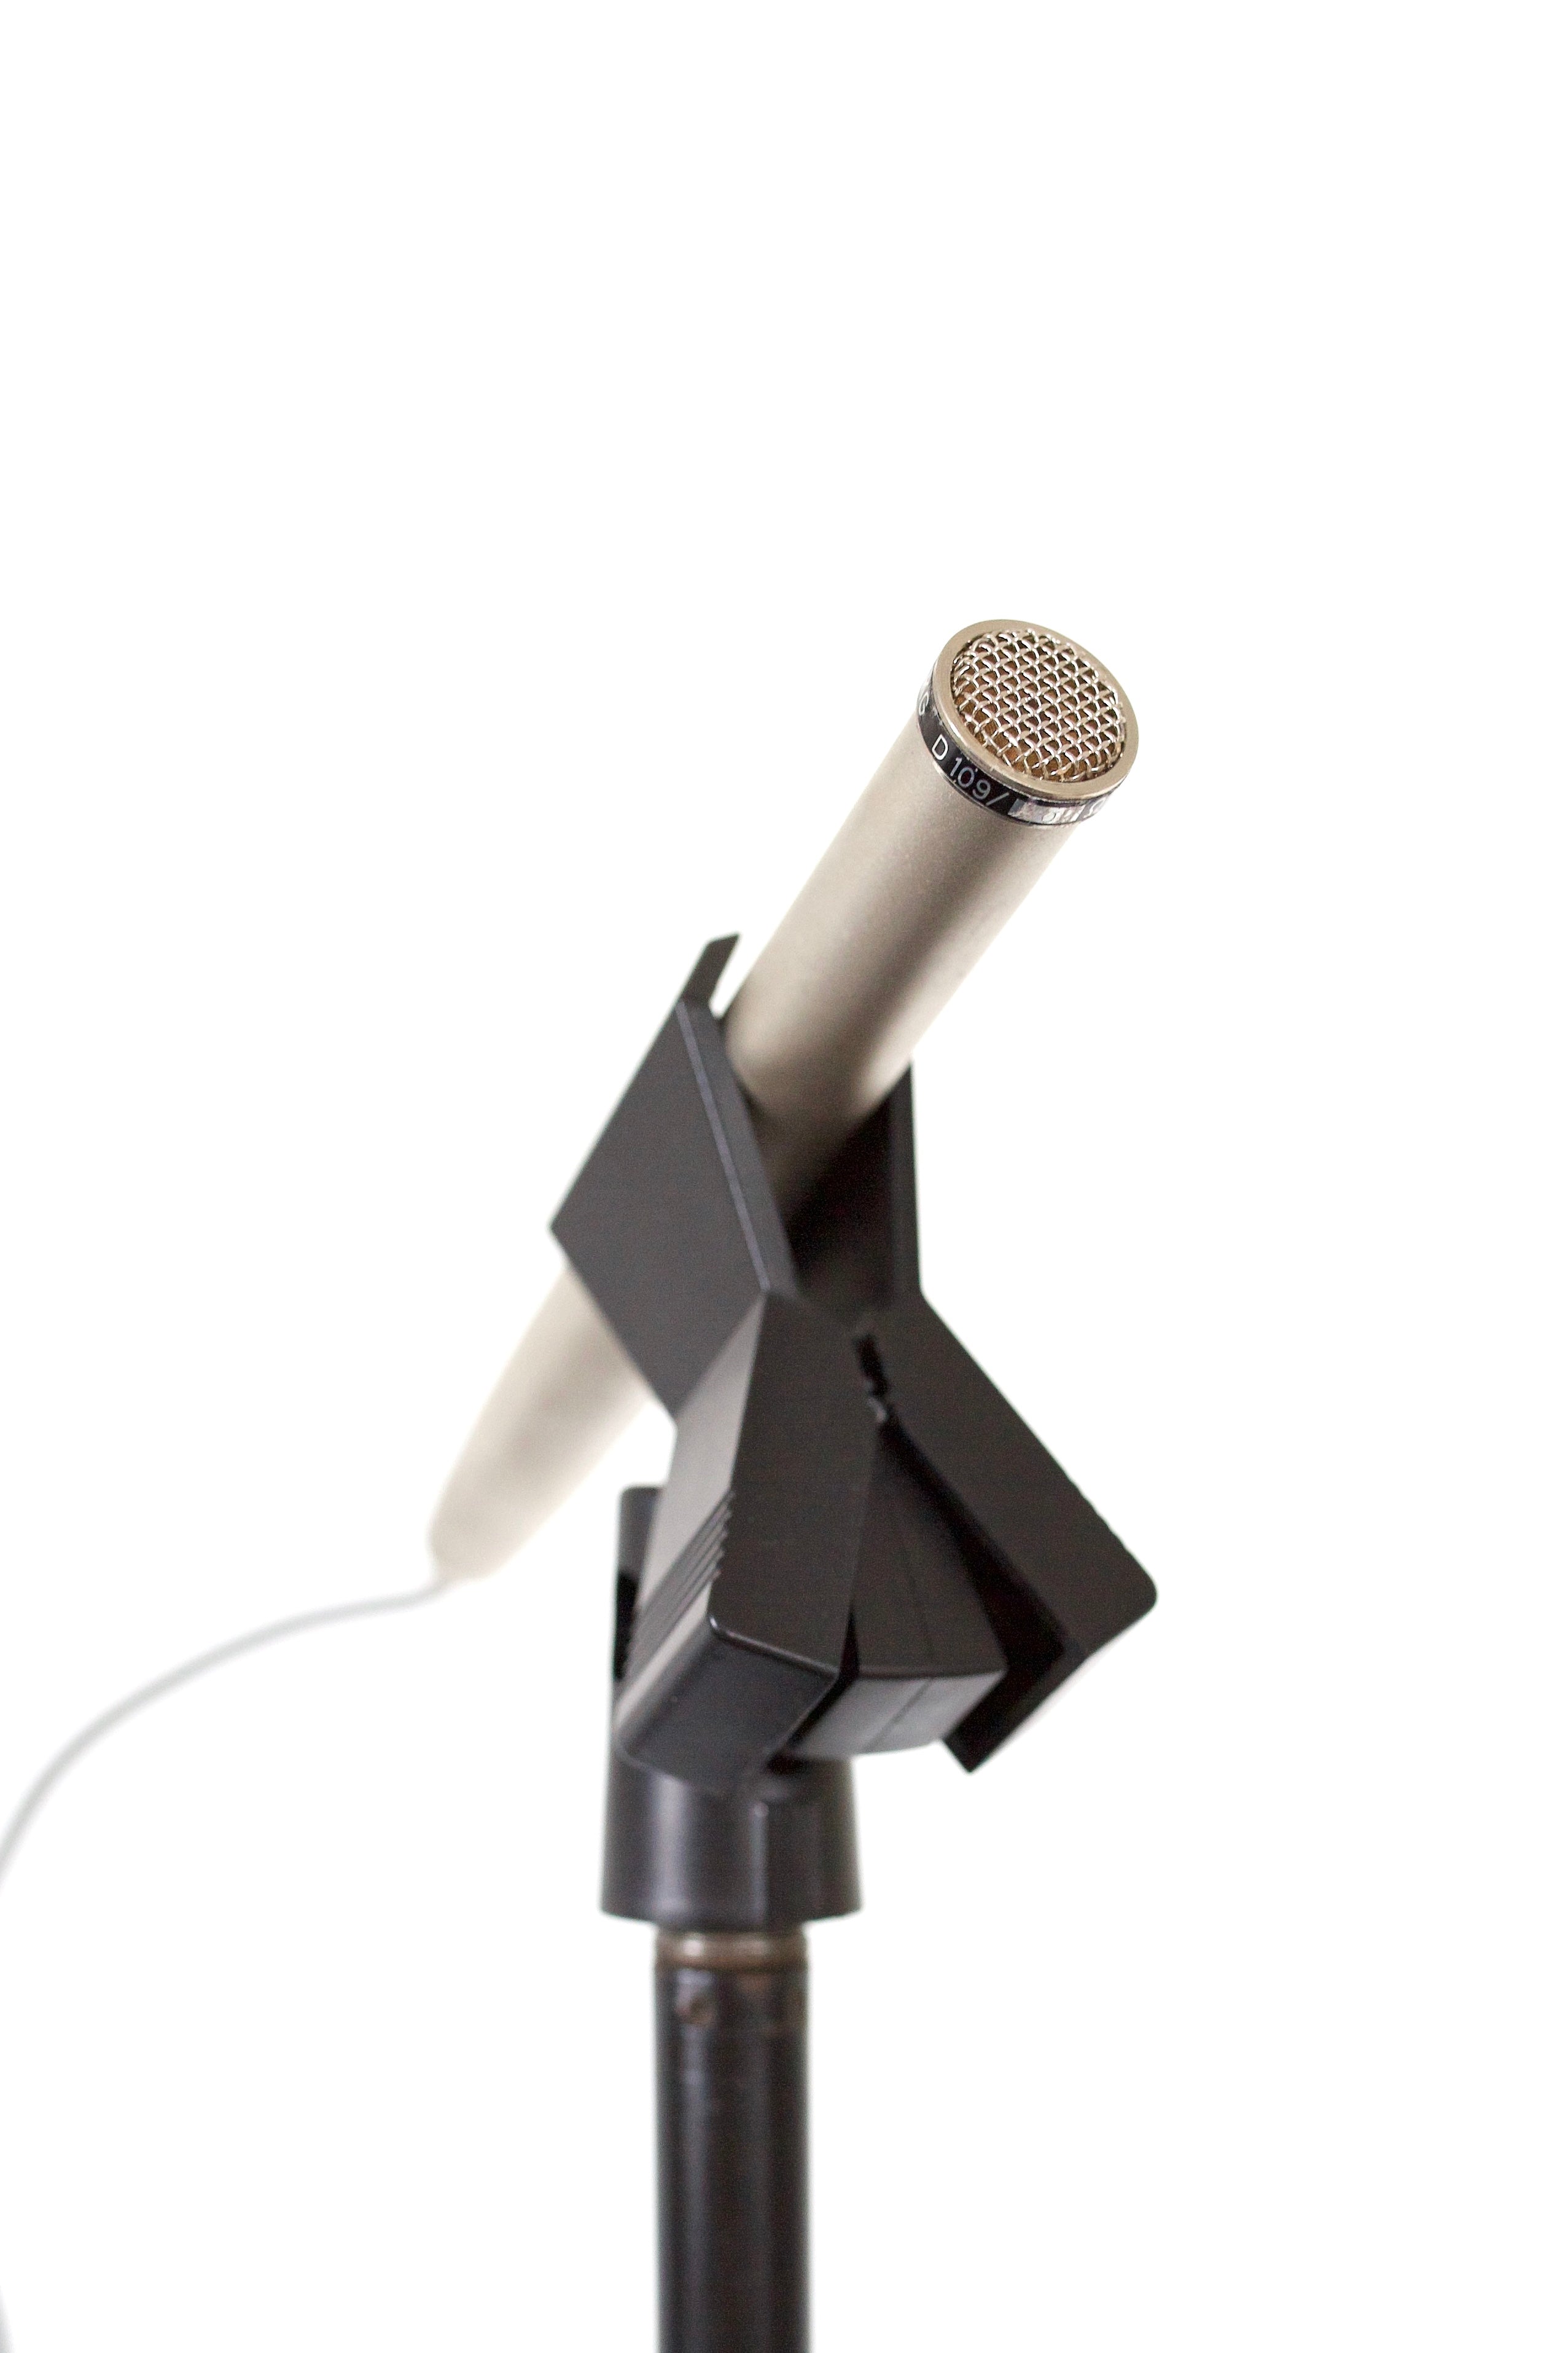 AKG D109 (Long Body) Dynamic Microphone